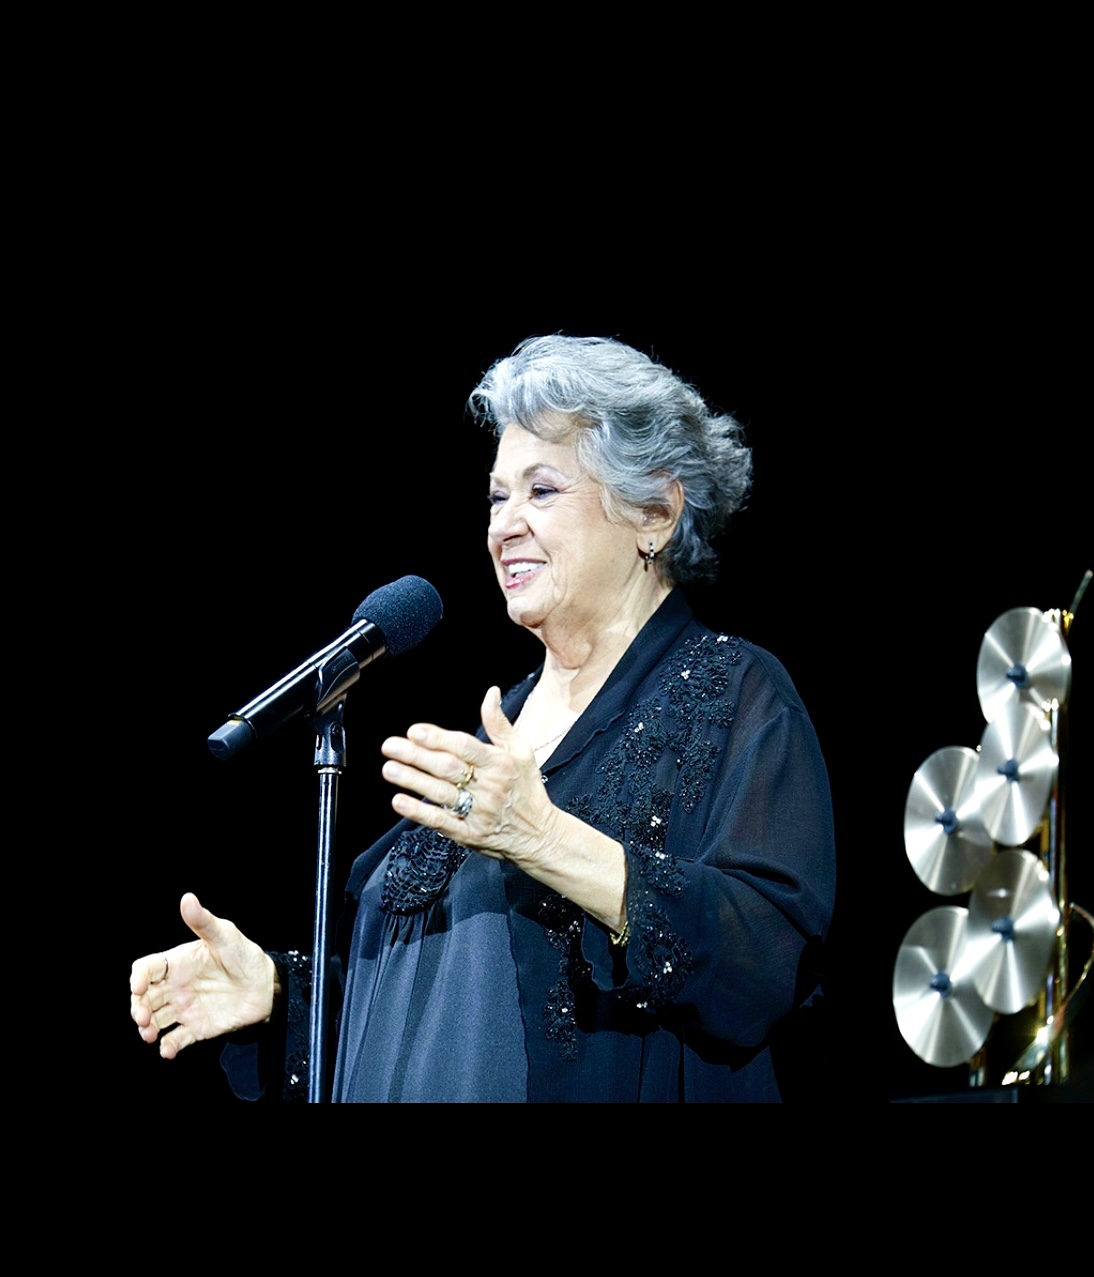 Une femme âgée en prestation au 33e gala annuel de la SOCAN, chantant dans un microphone.